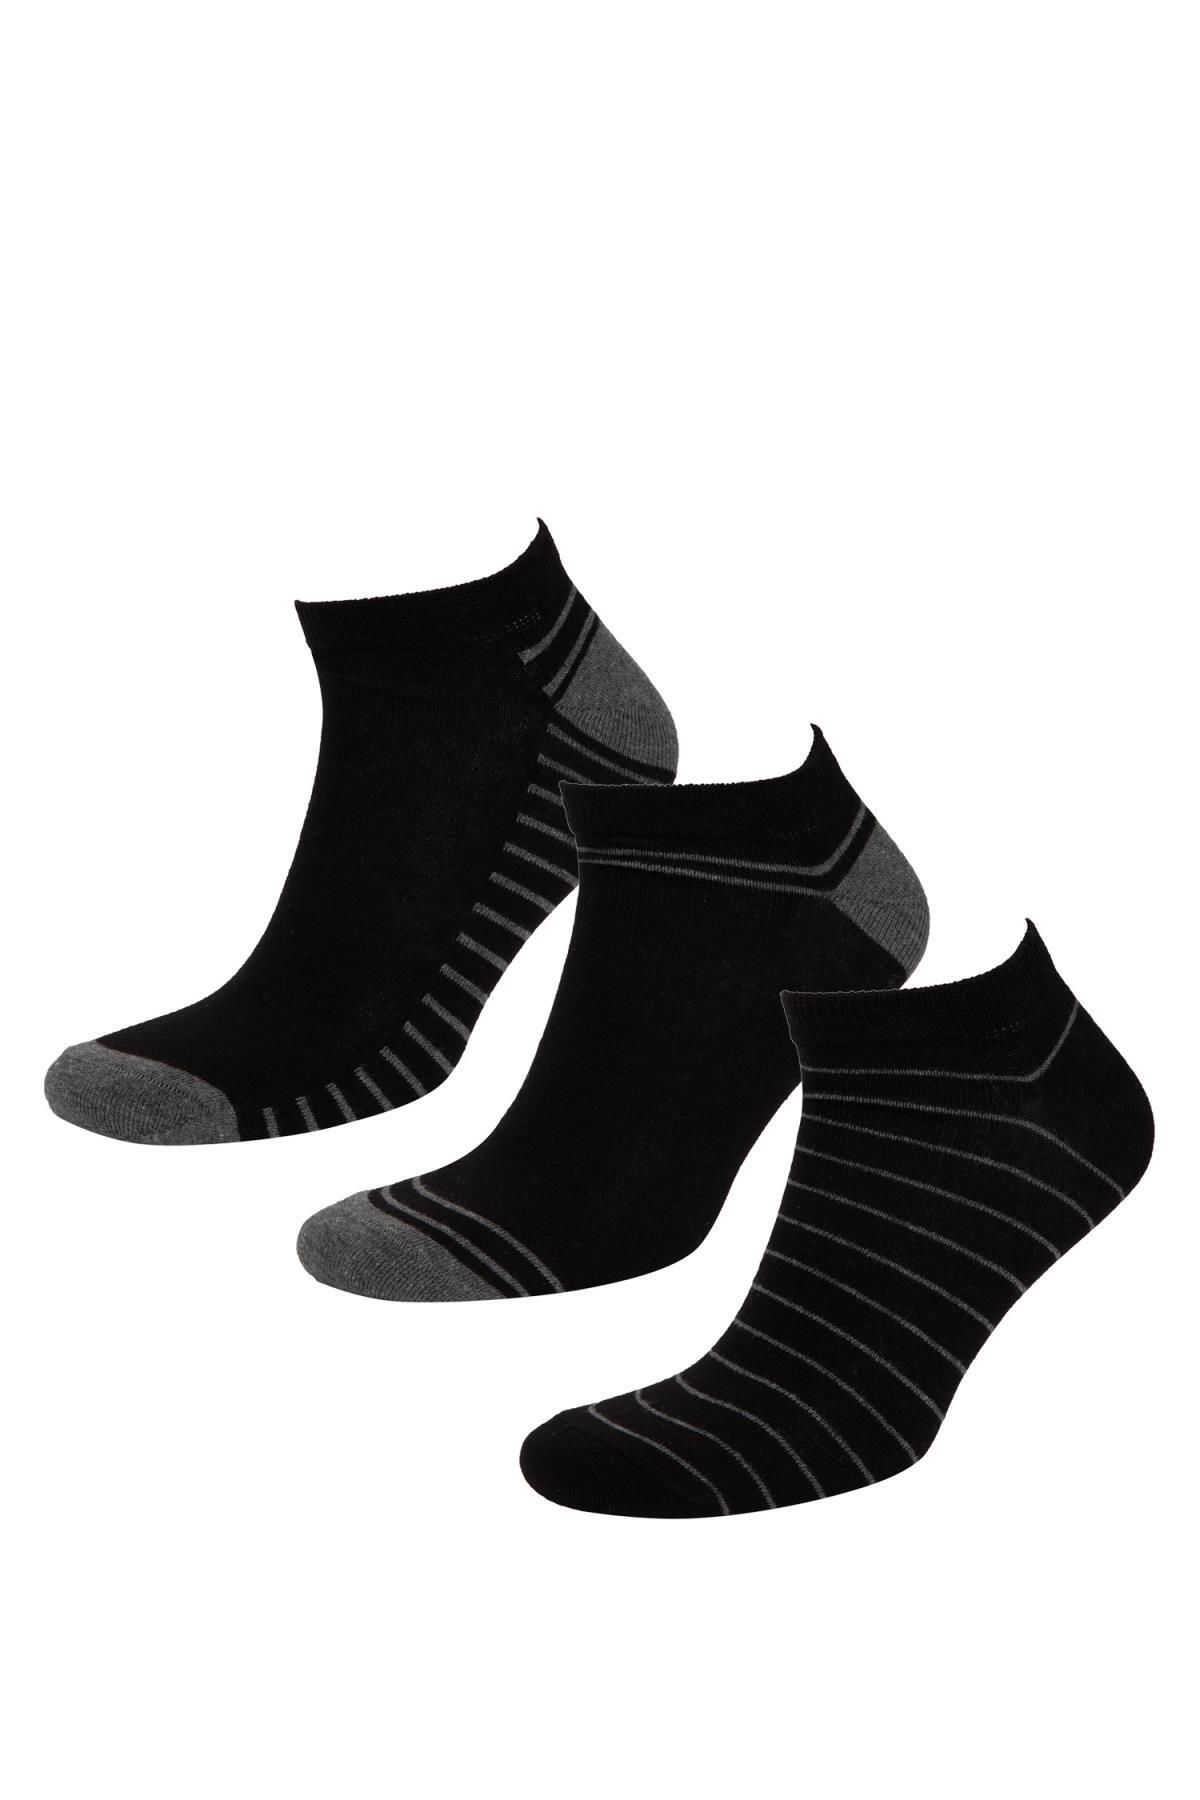 Defacto Erkek Çizgili 3'lü Pamuklu Patik Çorap C0112axns